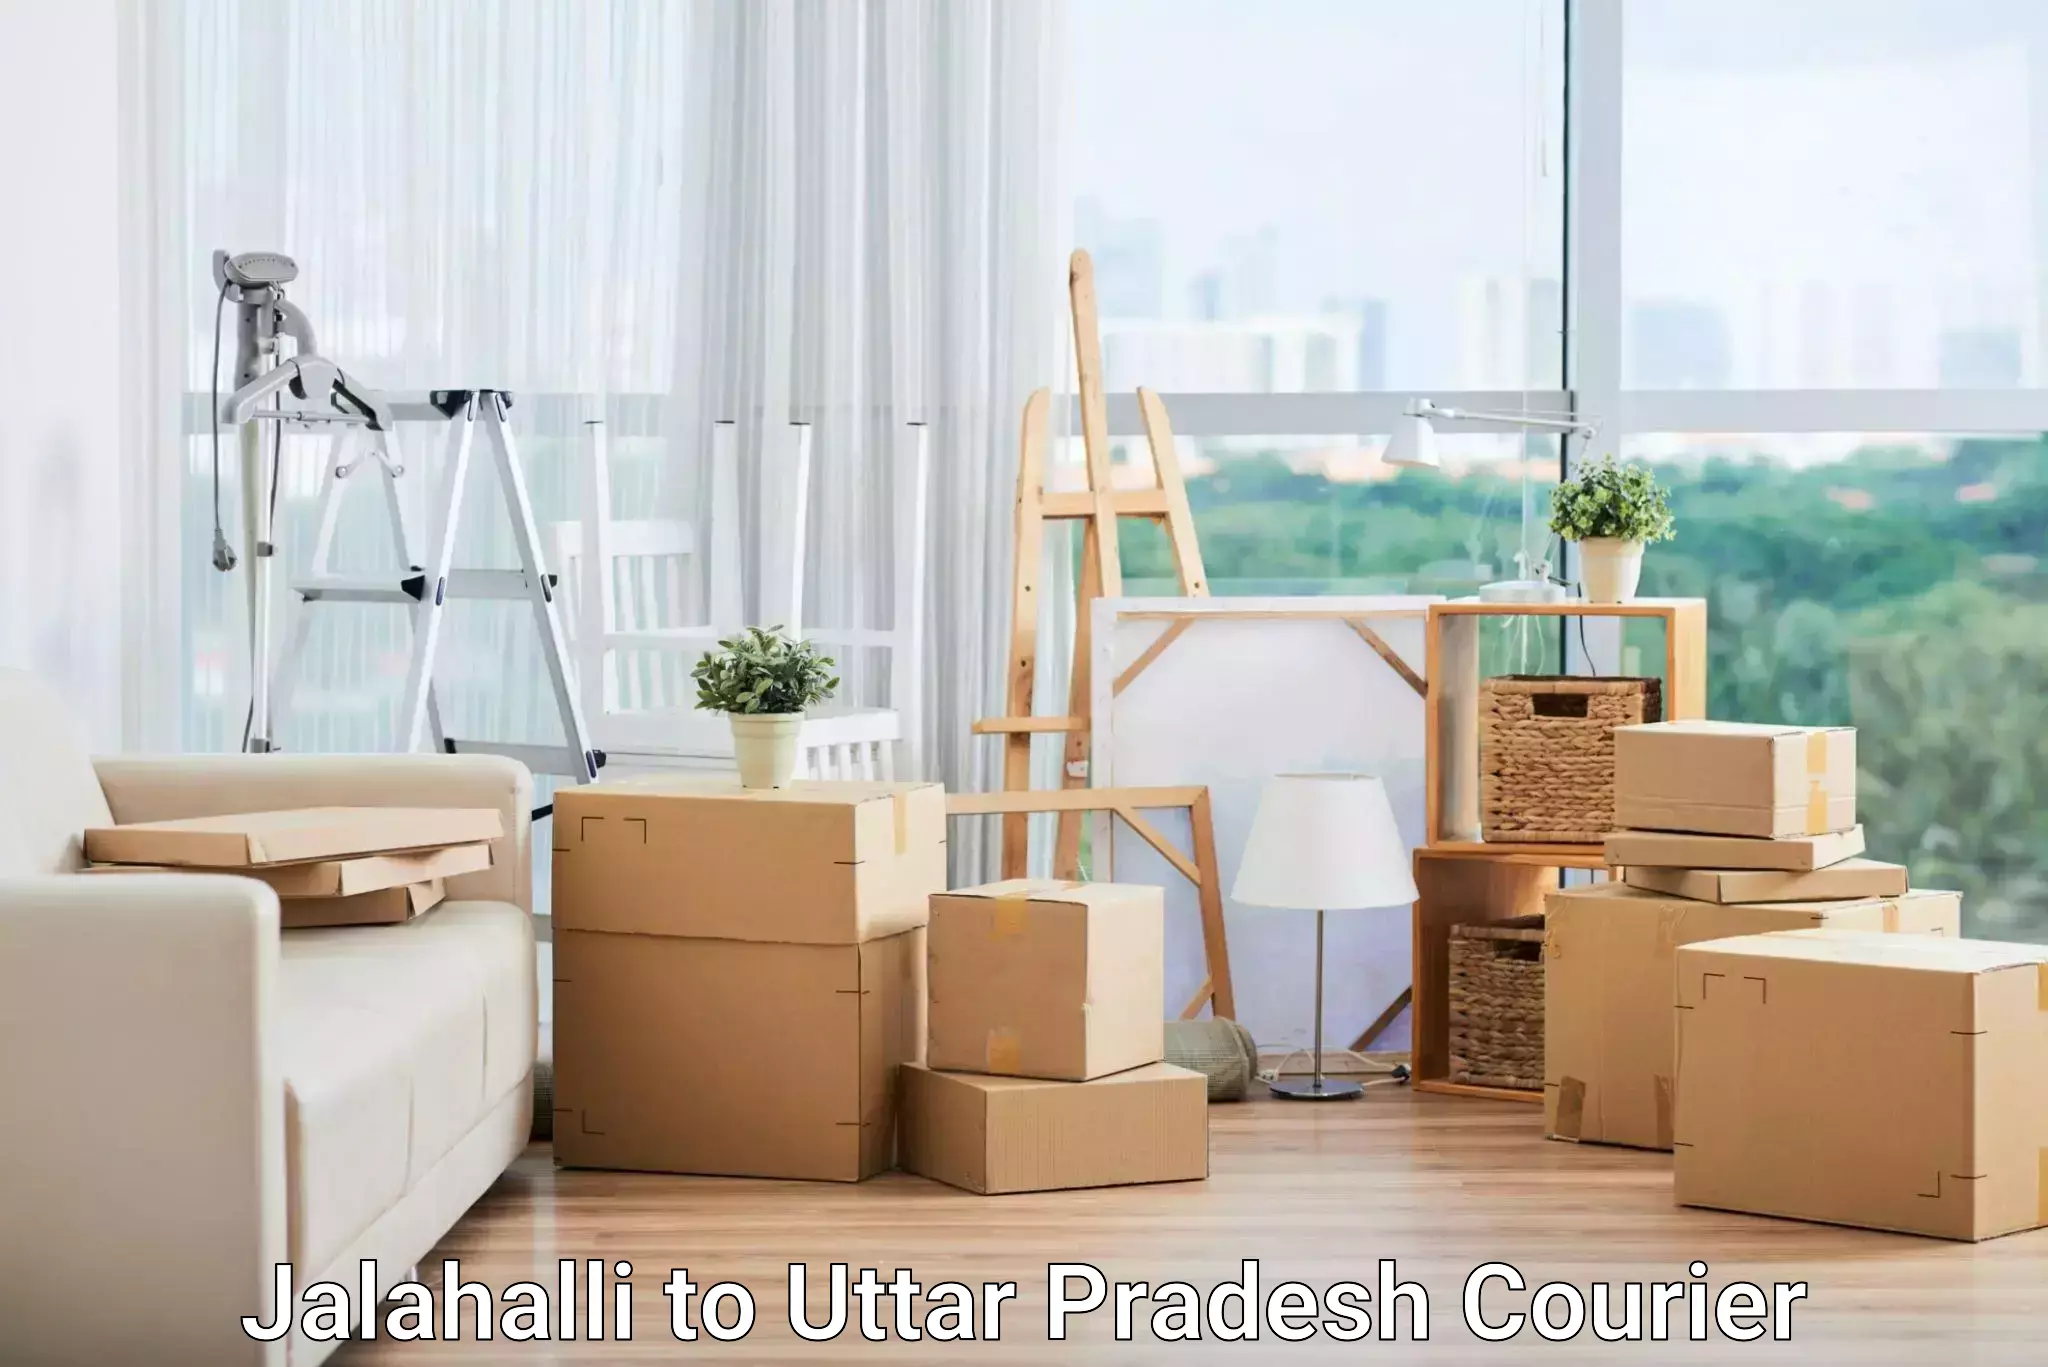 Door-to-door freight service Jalahalli to Unchahar